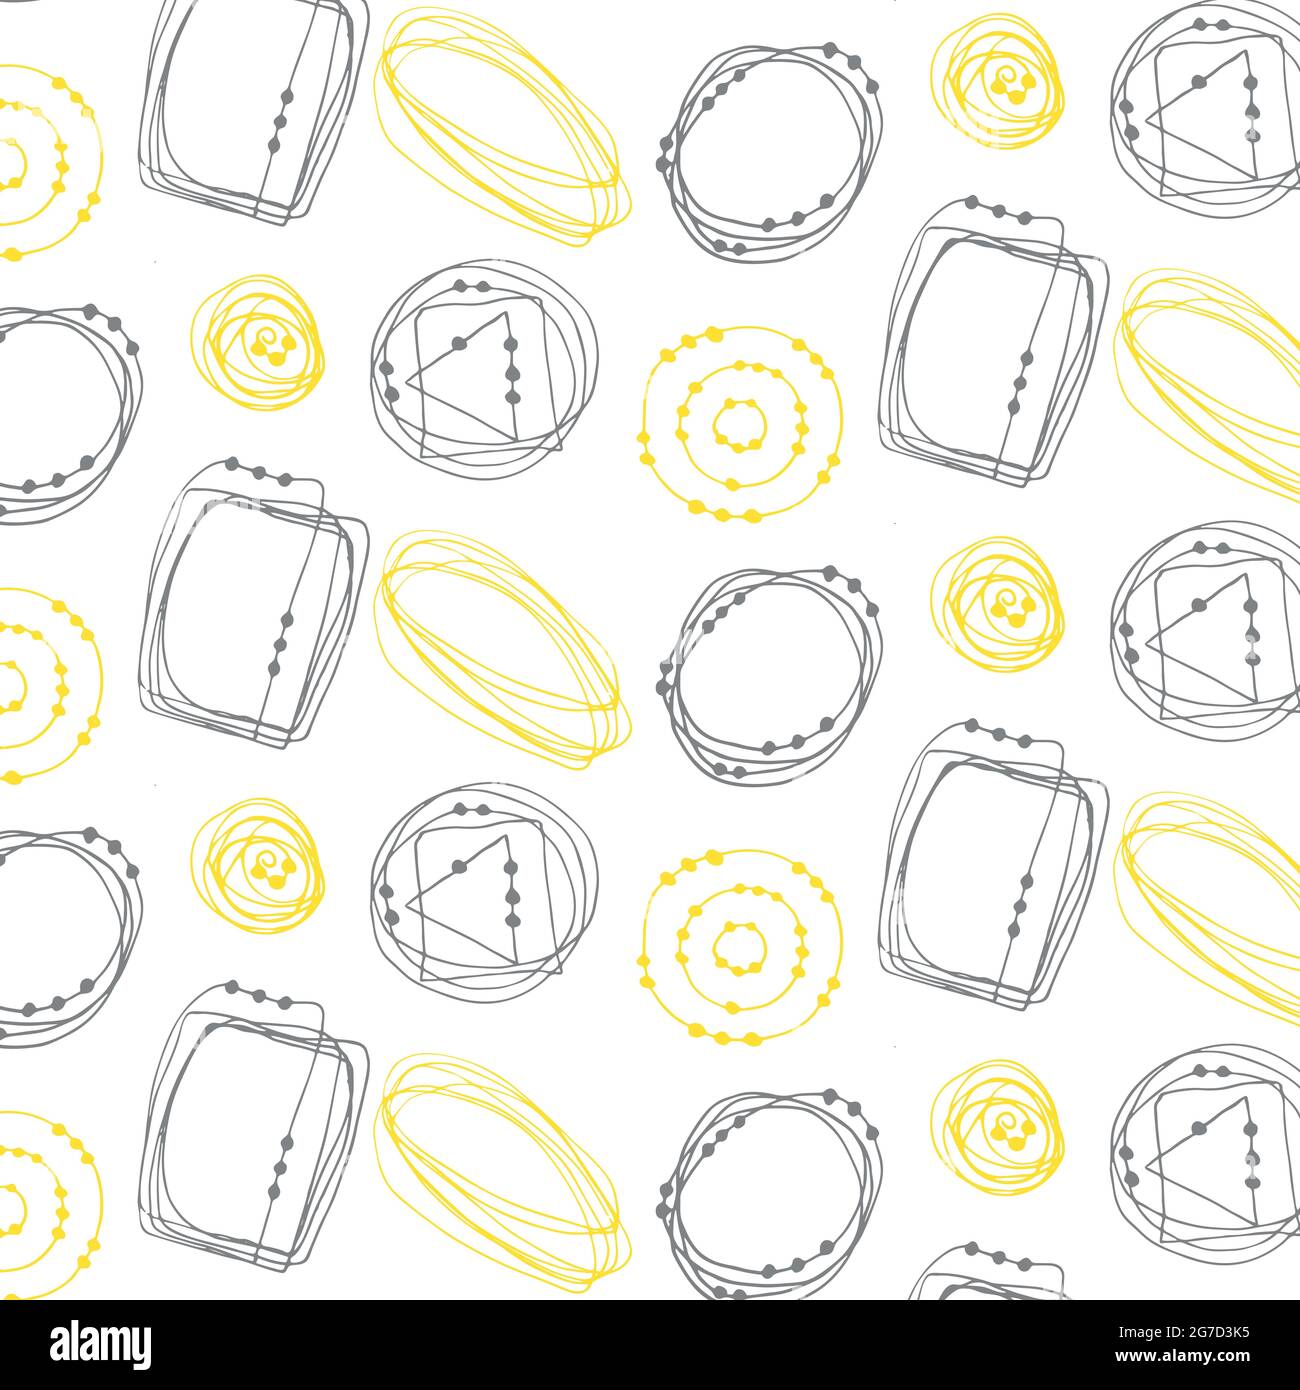 Motif de gribouillages abstraits sans couture, dessin à la main, gribouillages de couleur jaune et grise, fond blanc. Illustration vectorielle Illustration de Vecteur